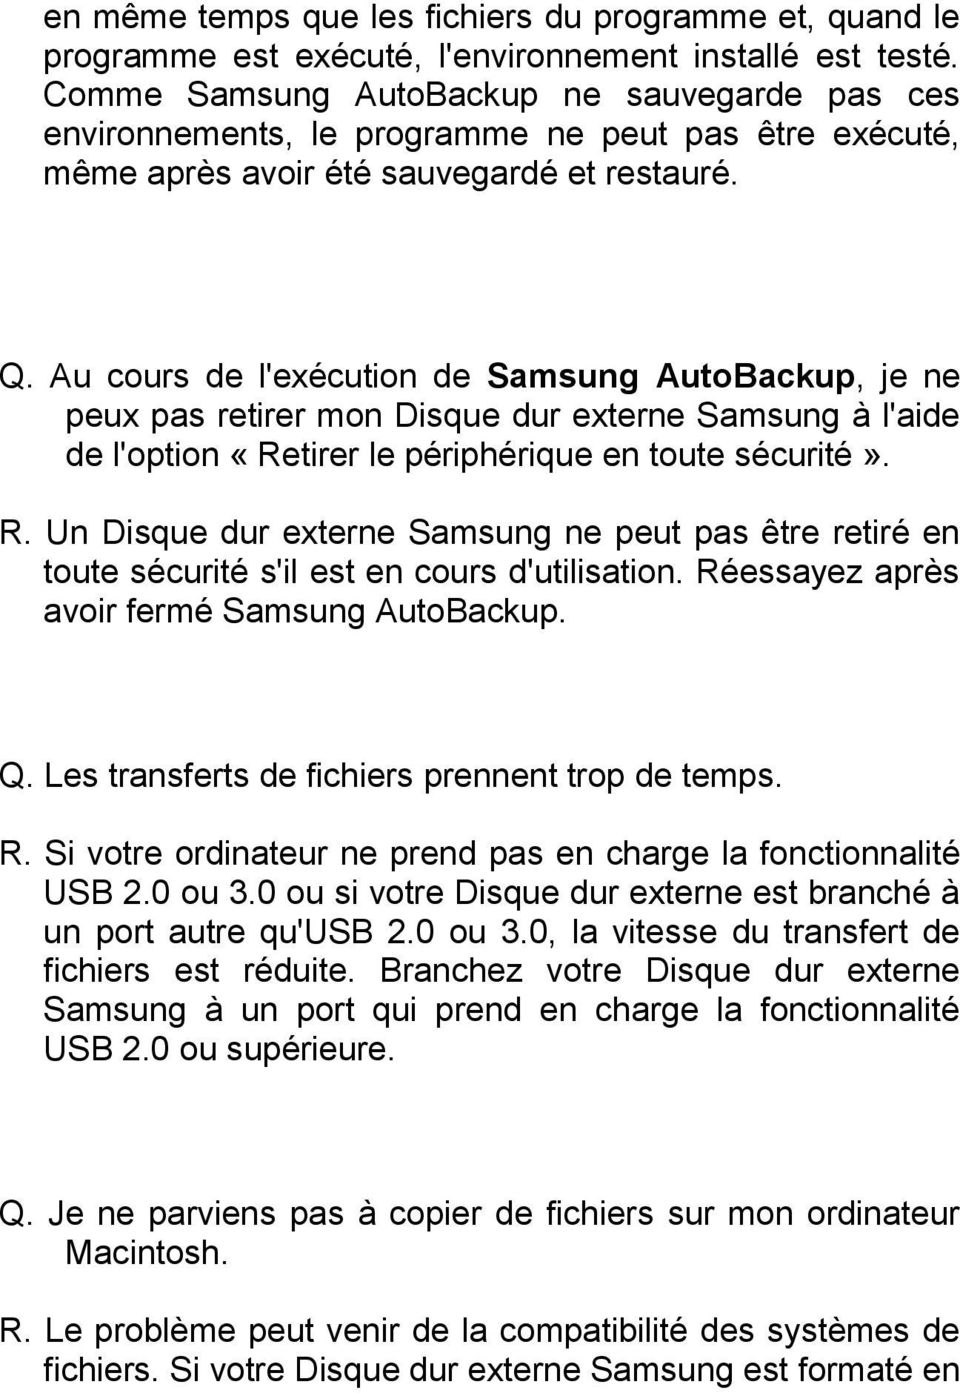 Au cours de l'exécution de Samsung AutoBackup, je ne peux pas retirer mon Disque dur externe Samsung à l'aide de l'option «Retirer le périphérique en toute sécurité». R.